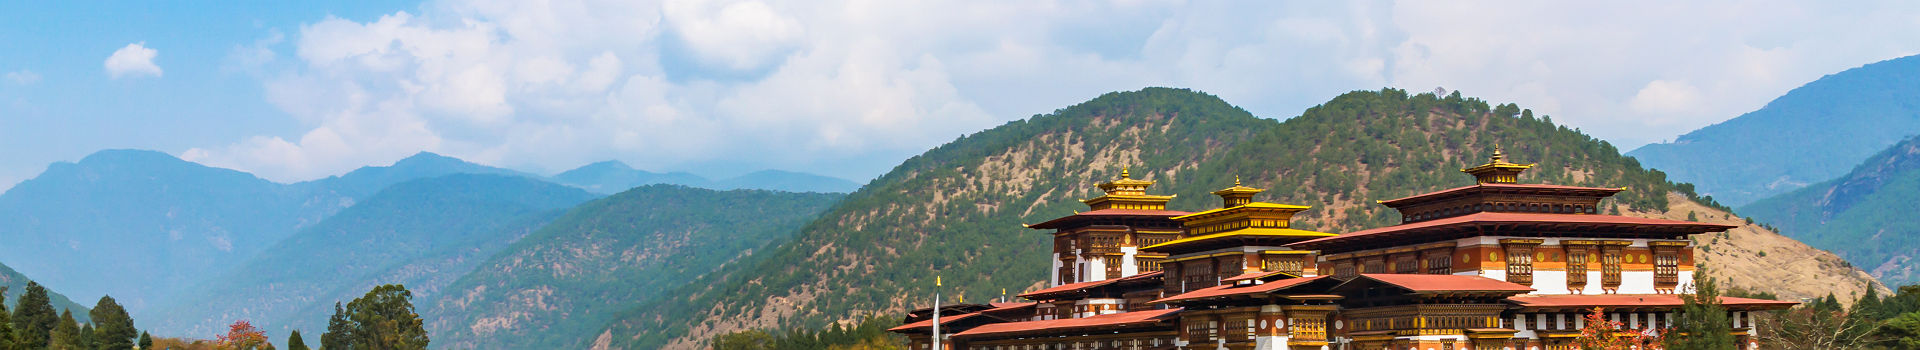 Bhoutan - Vue sur le palais de Punakha Dzong au bord d'une rivière